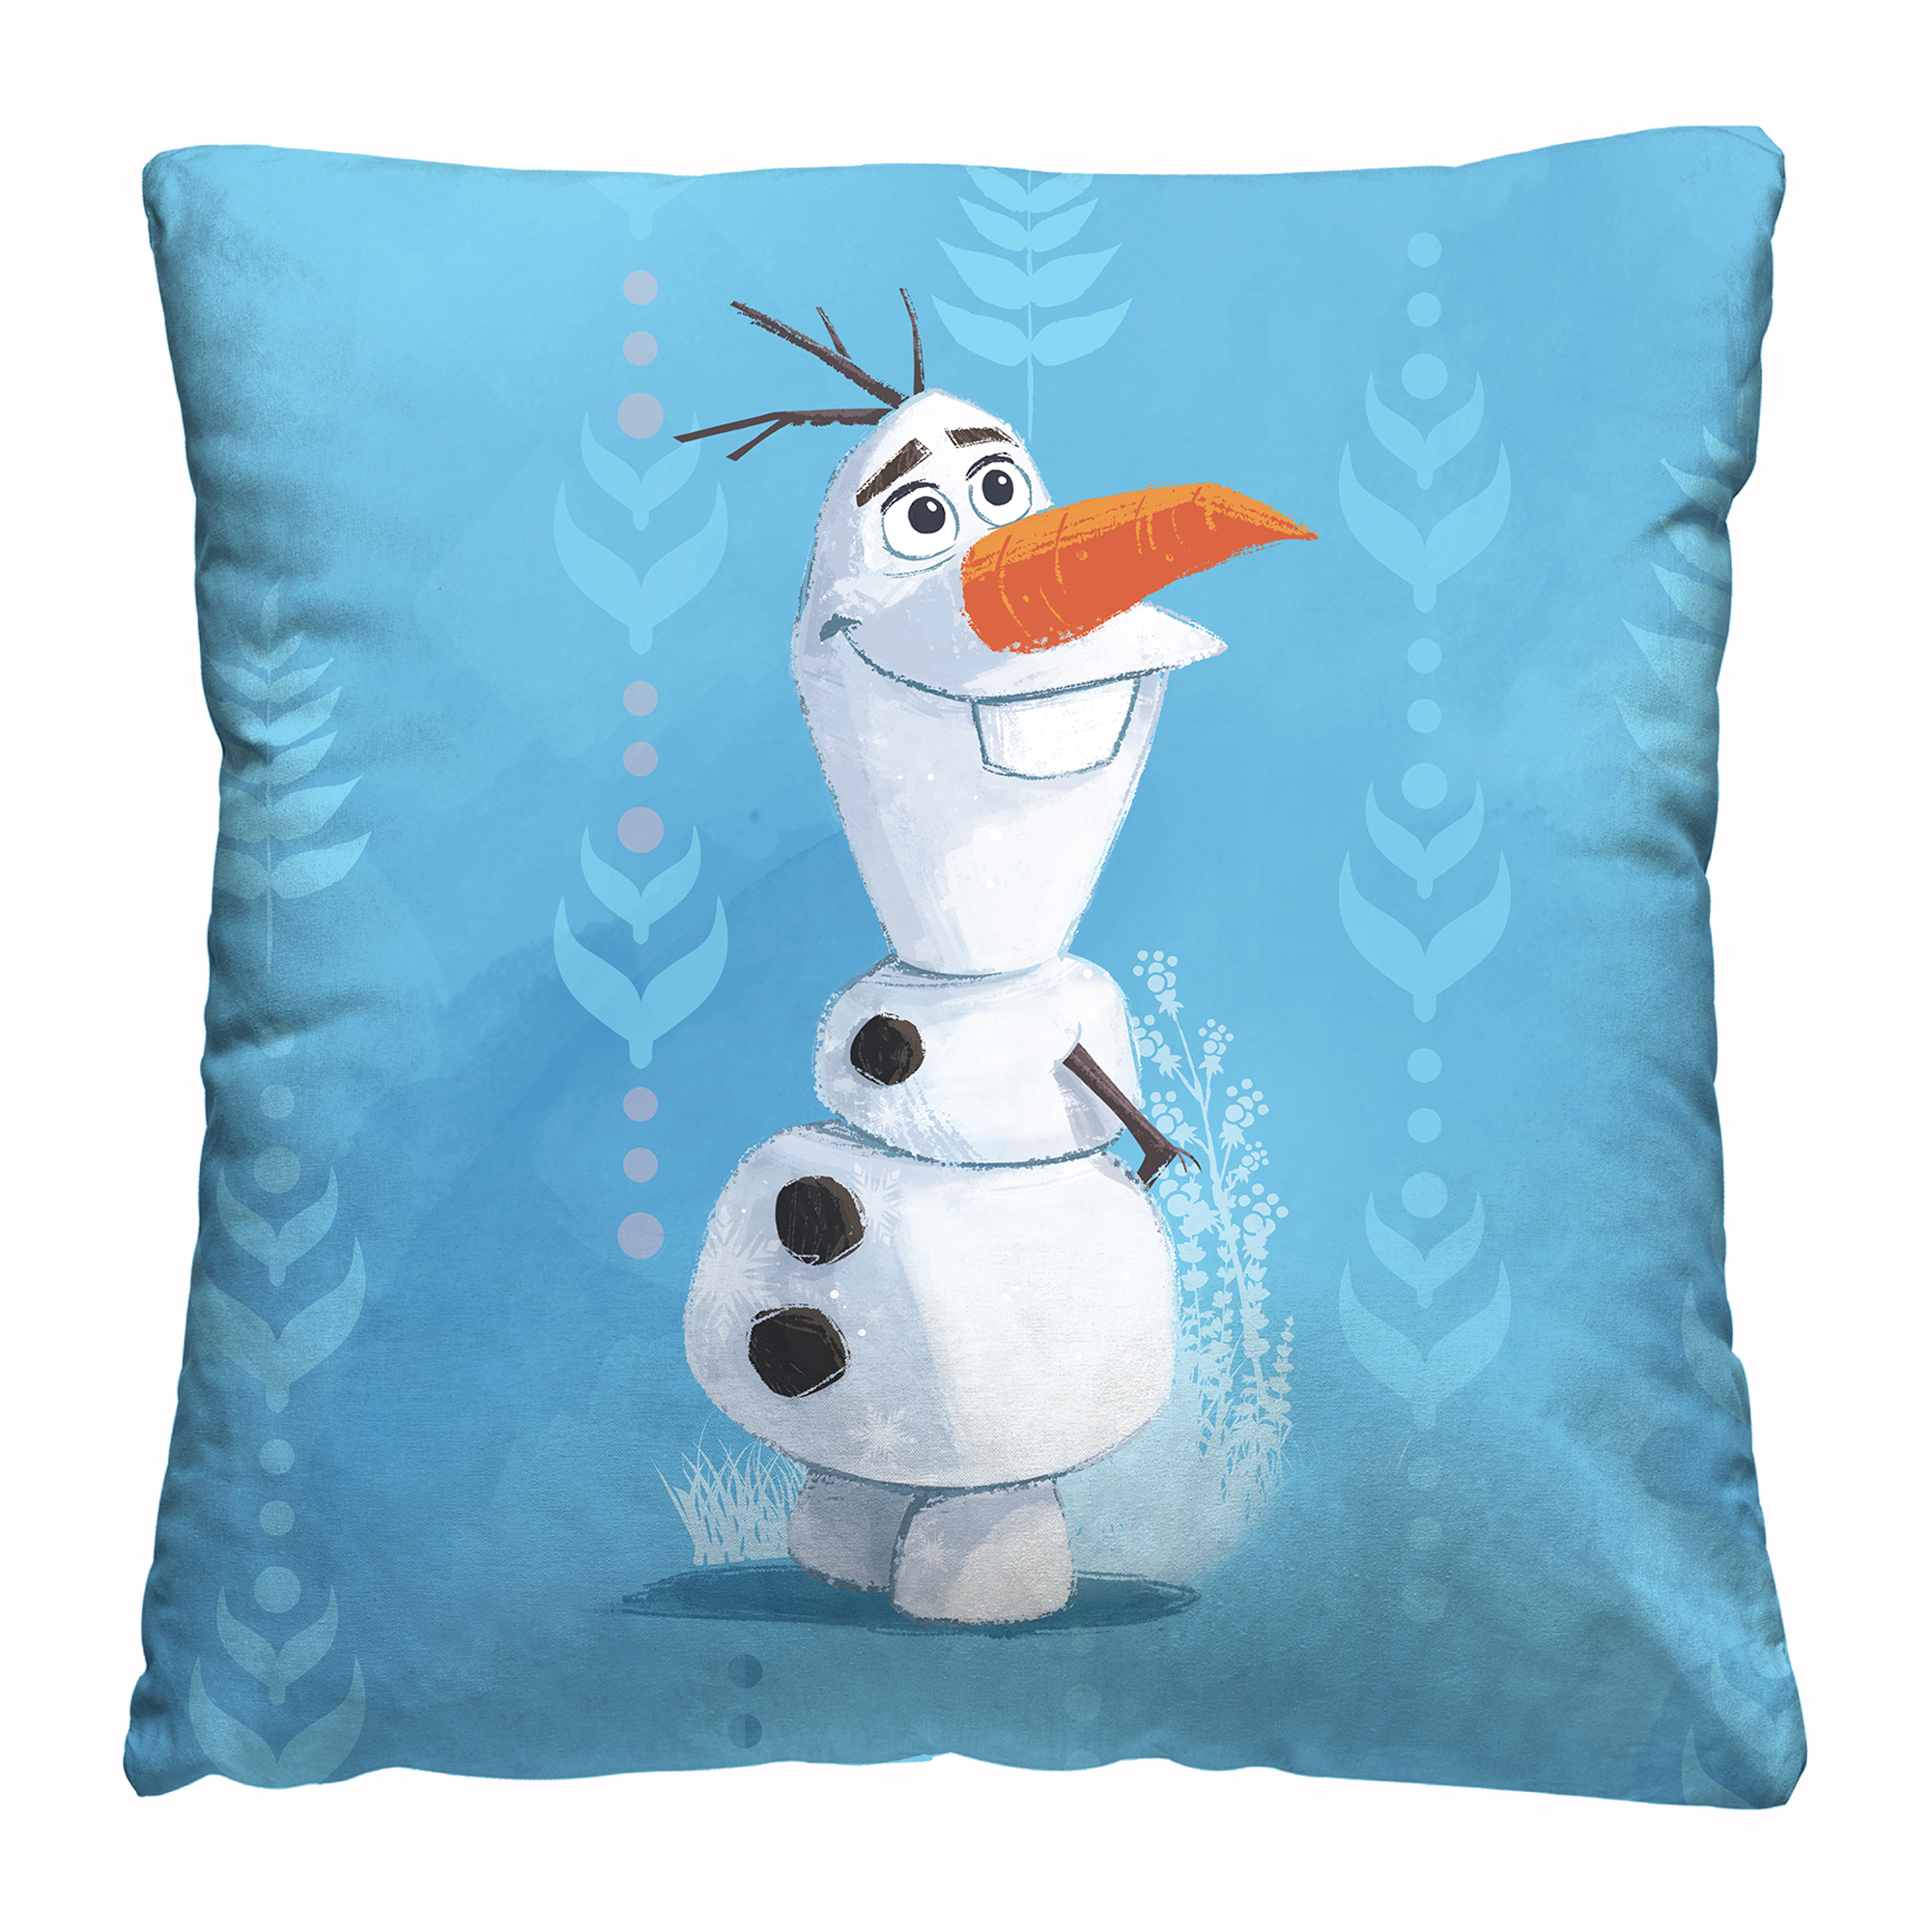 Декоративная подушка Disney Olaf - фото 1